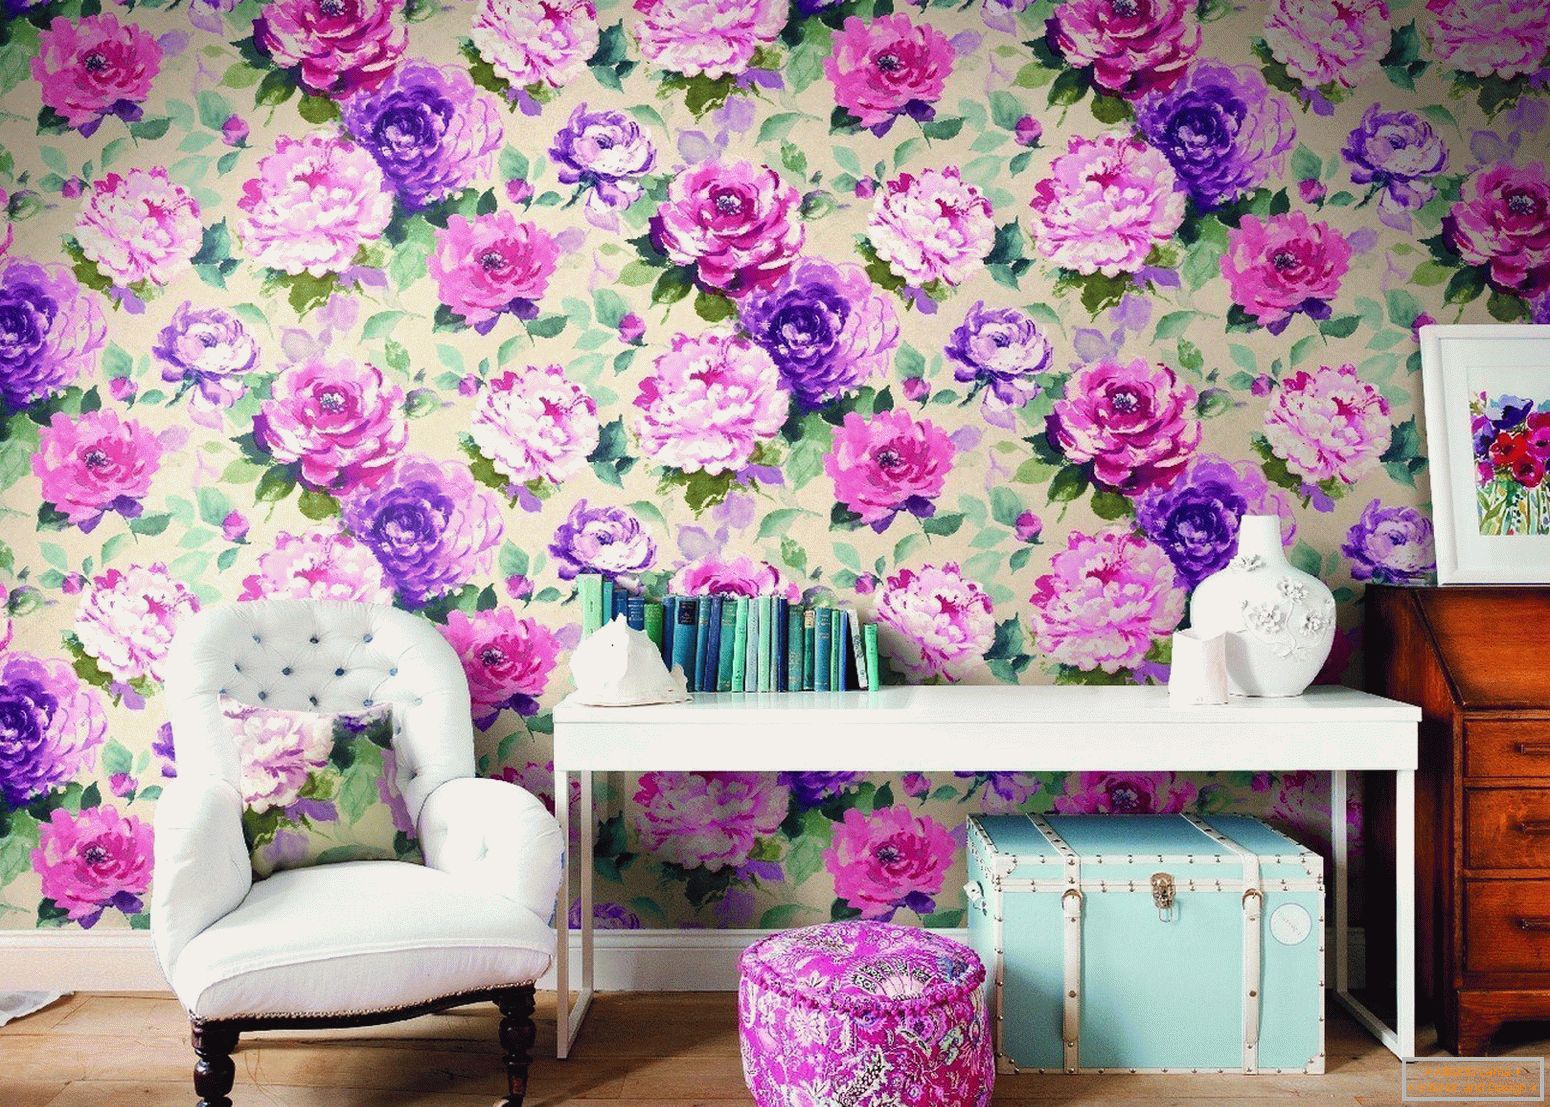 Papéis de parede com flores no interior